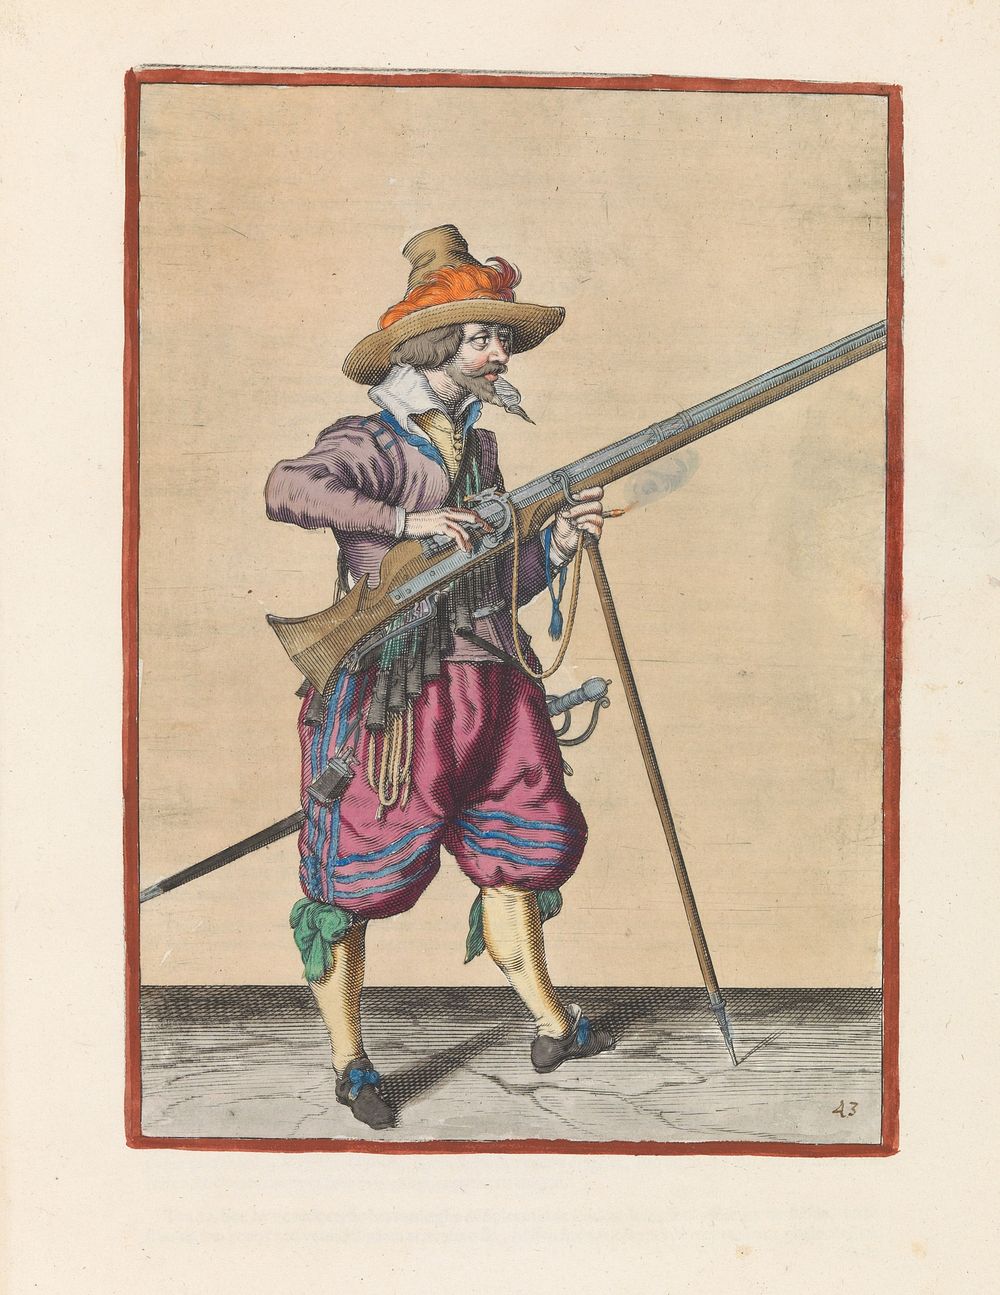 Soldaat op wacht die de pan van zijn musket met twee vingers bedekt tegen vonken (c. 1597 - 1607) by Jacques de Gheyn II and…